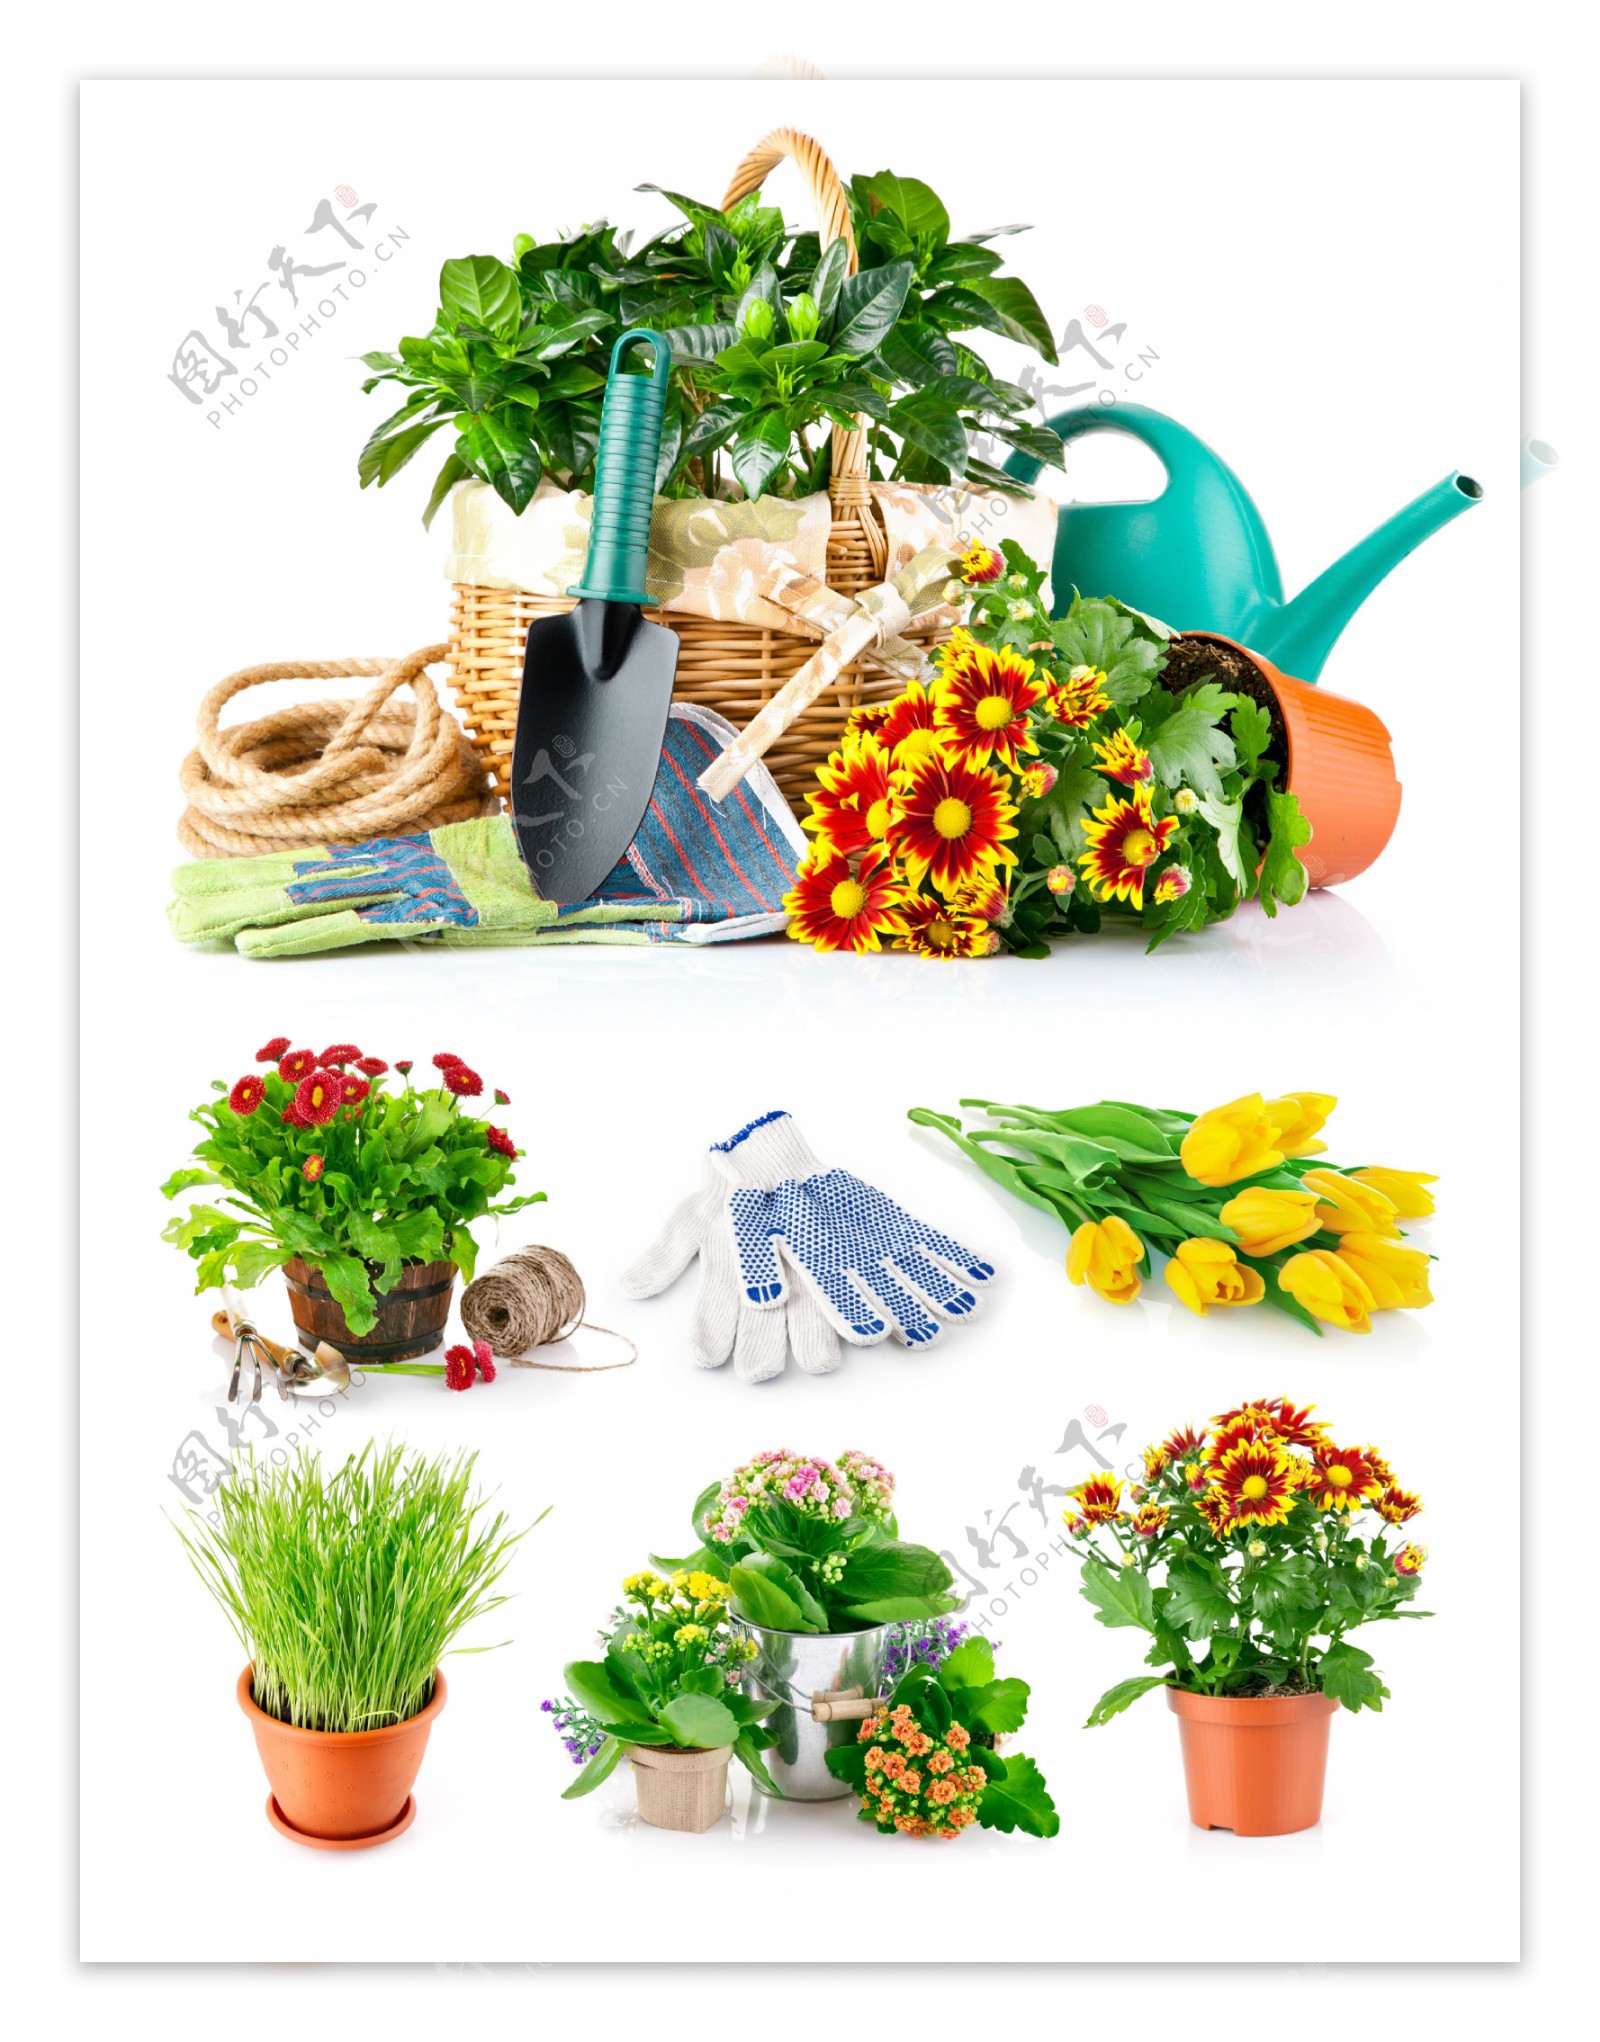 园艺工具与鲜花花盆图片